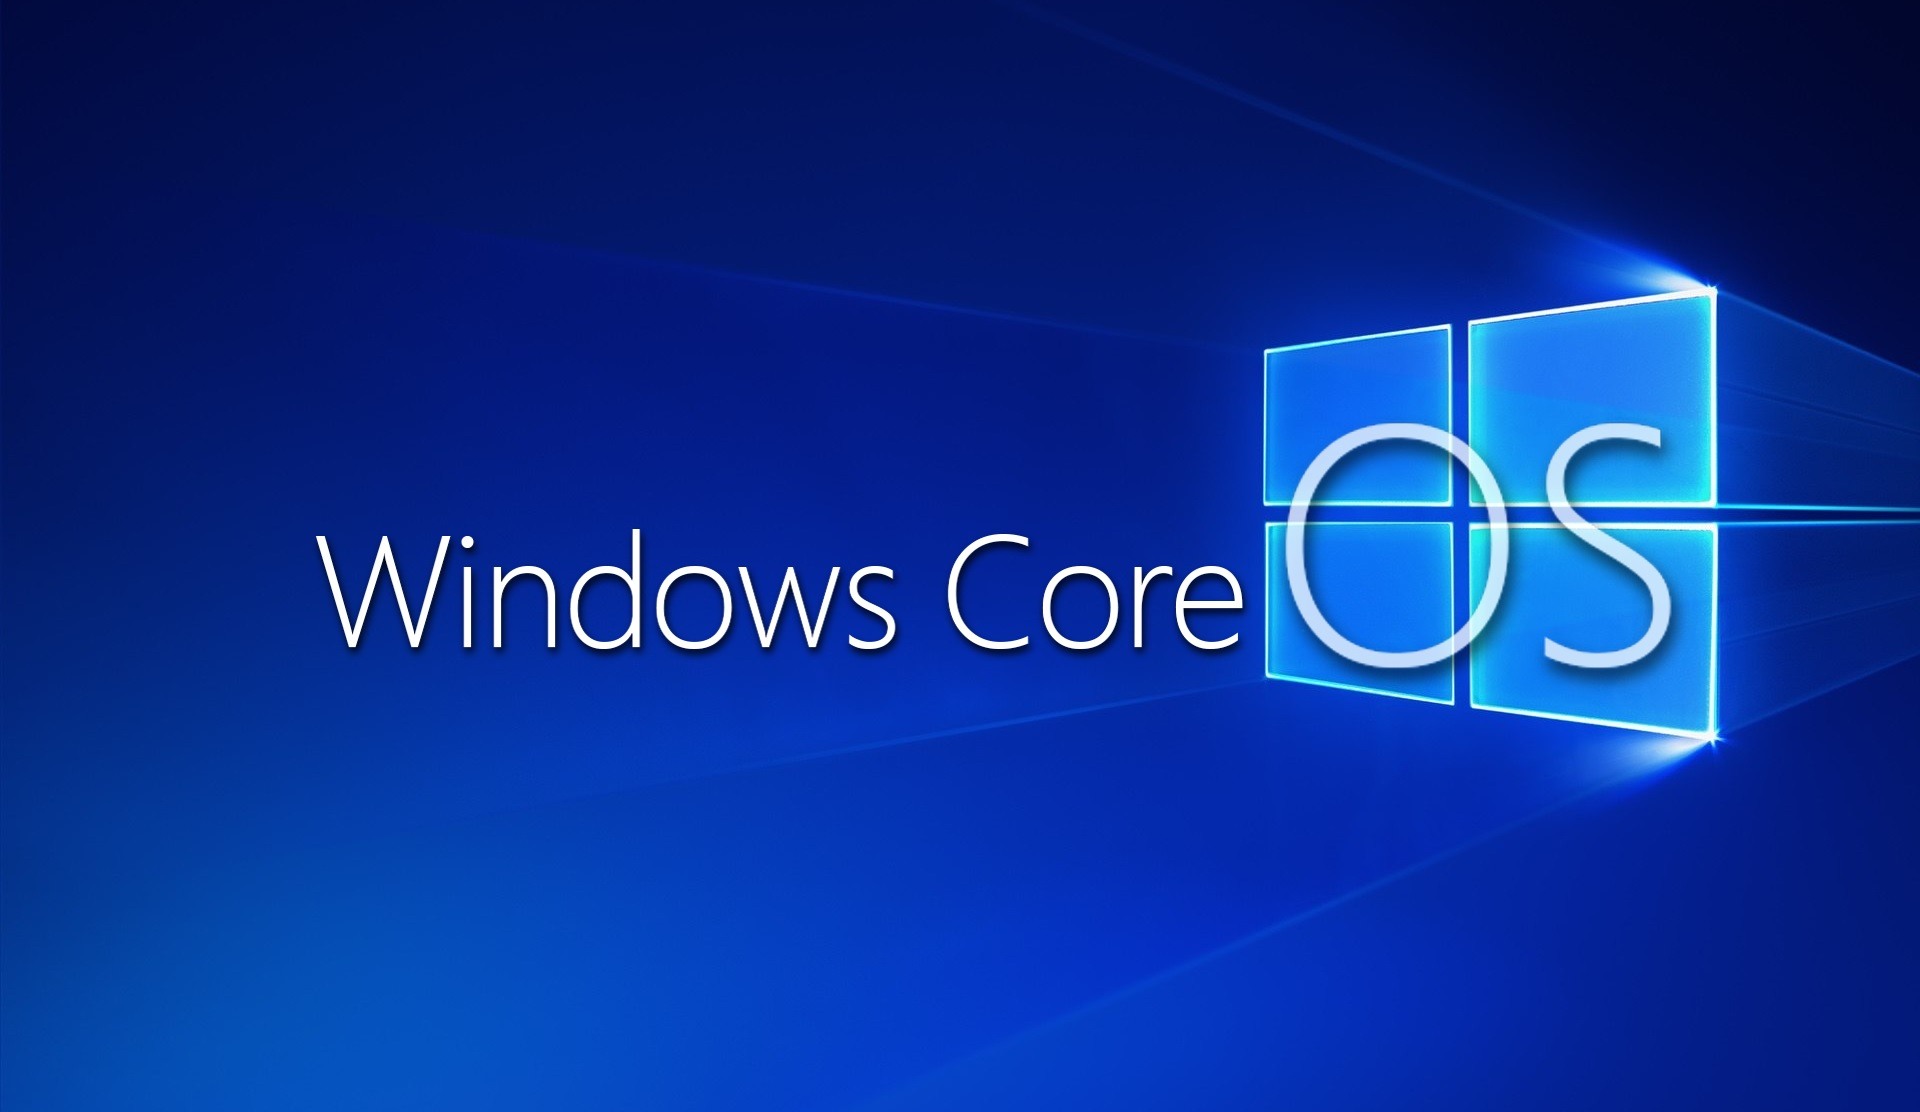 Weitere Hinweise auf Windows Core OS im Netz gesichtet